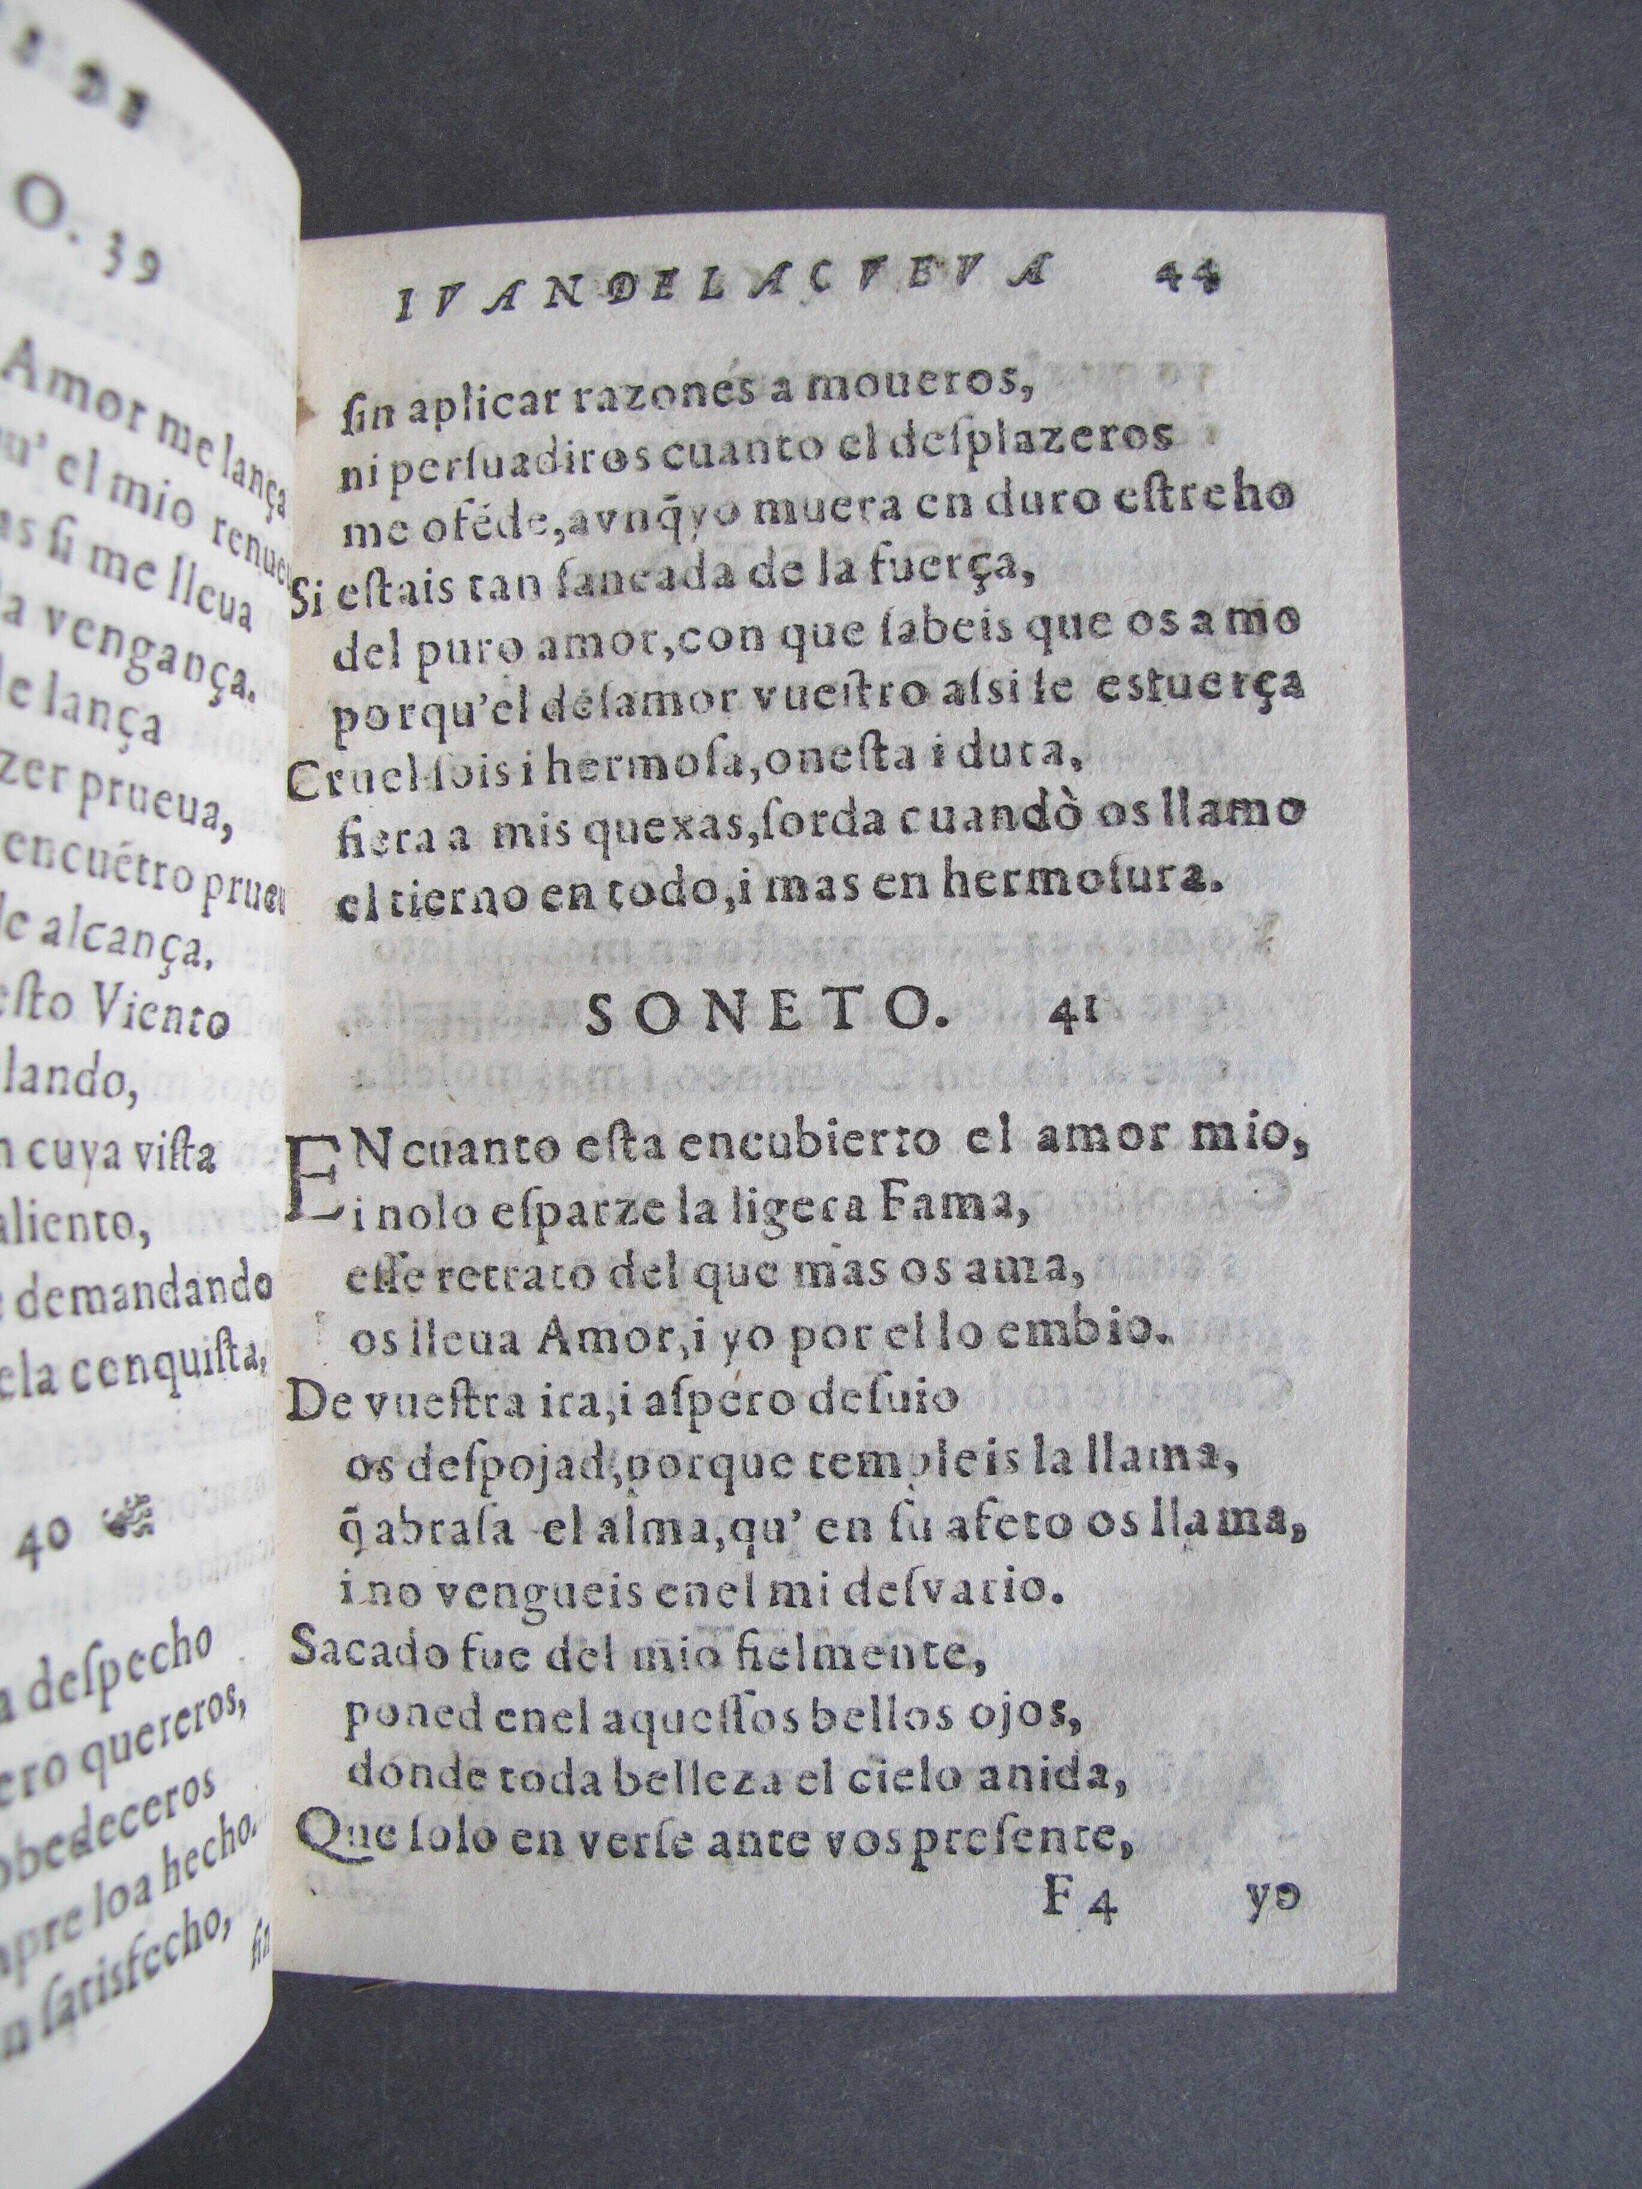 Folio F4